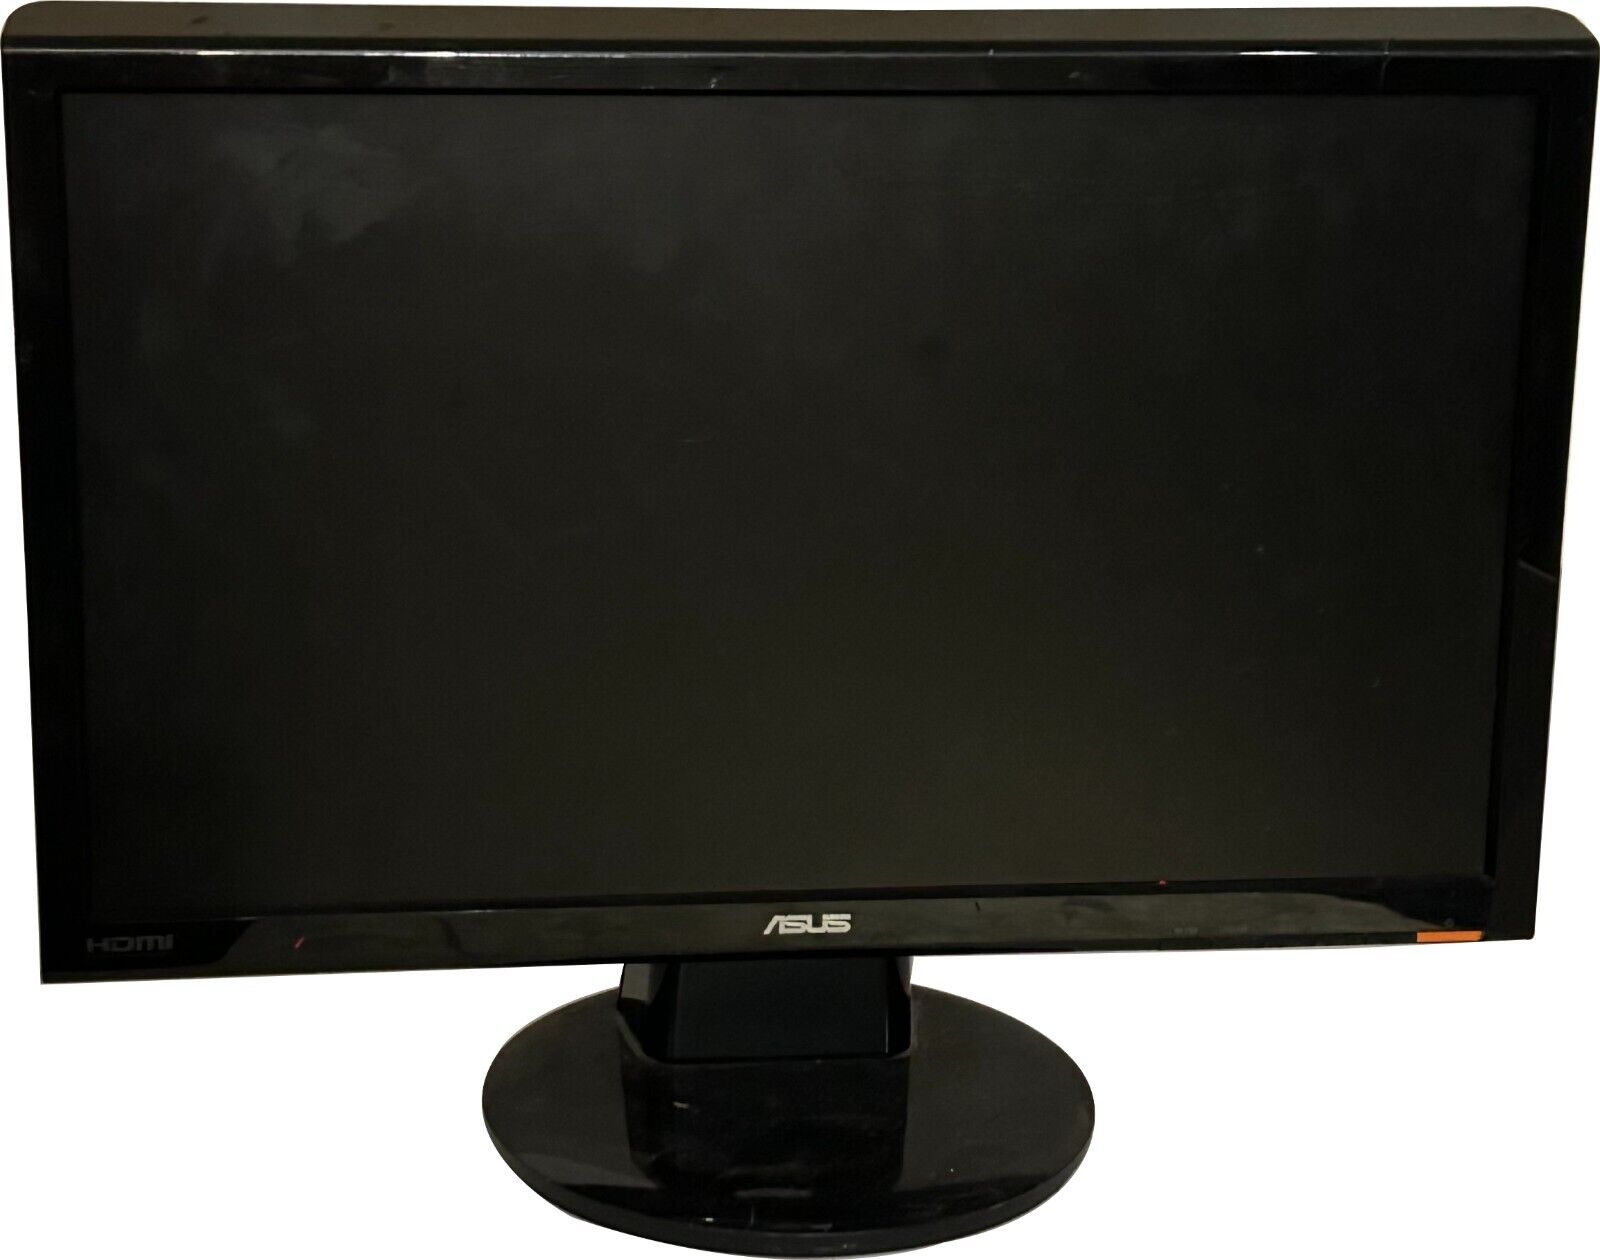 Asus LCD VS228H-P LED Backlight 21.5” Widescreen Computer Monitor HDMI DVI VGA